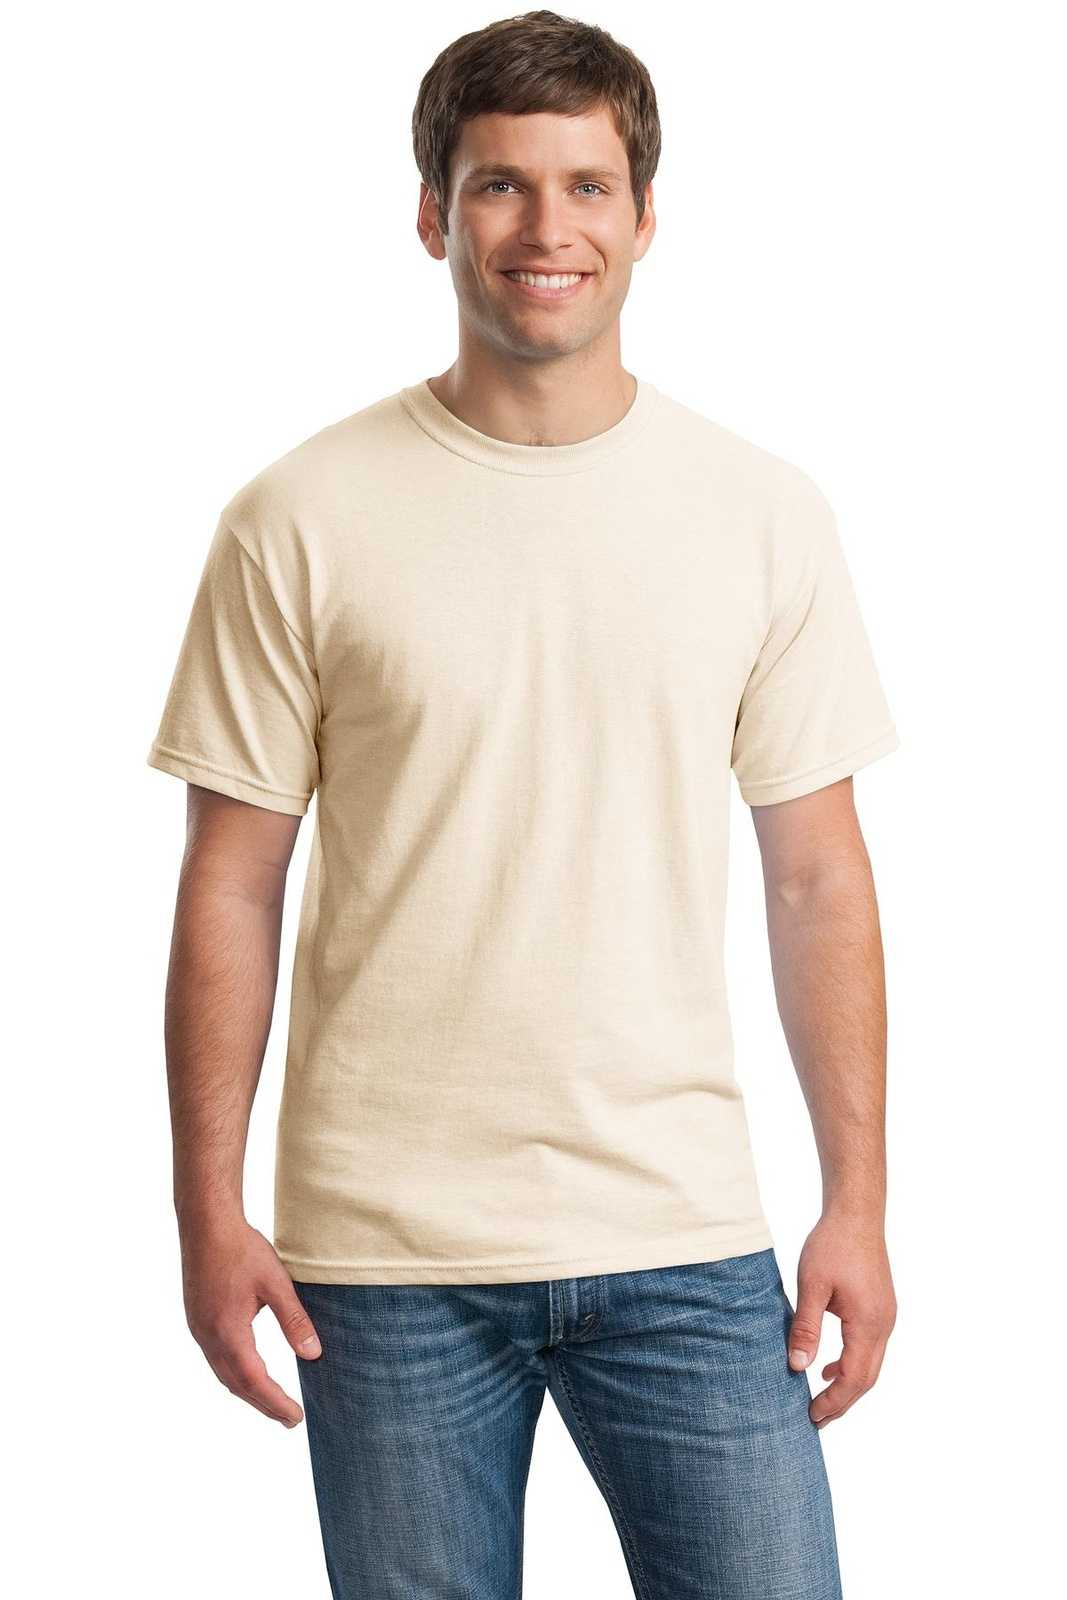 Gildan 5000 Heavy Cotton 100% Cotton T-Shirt - Natural - HIT a Double